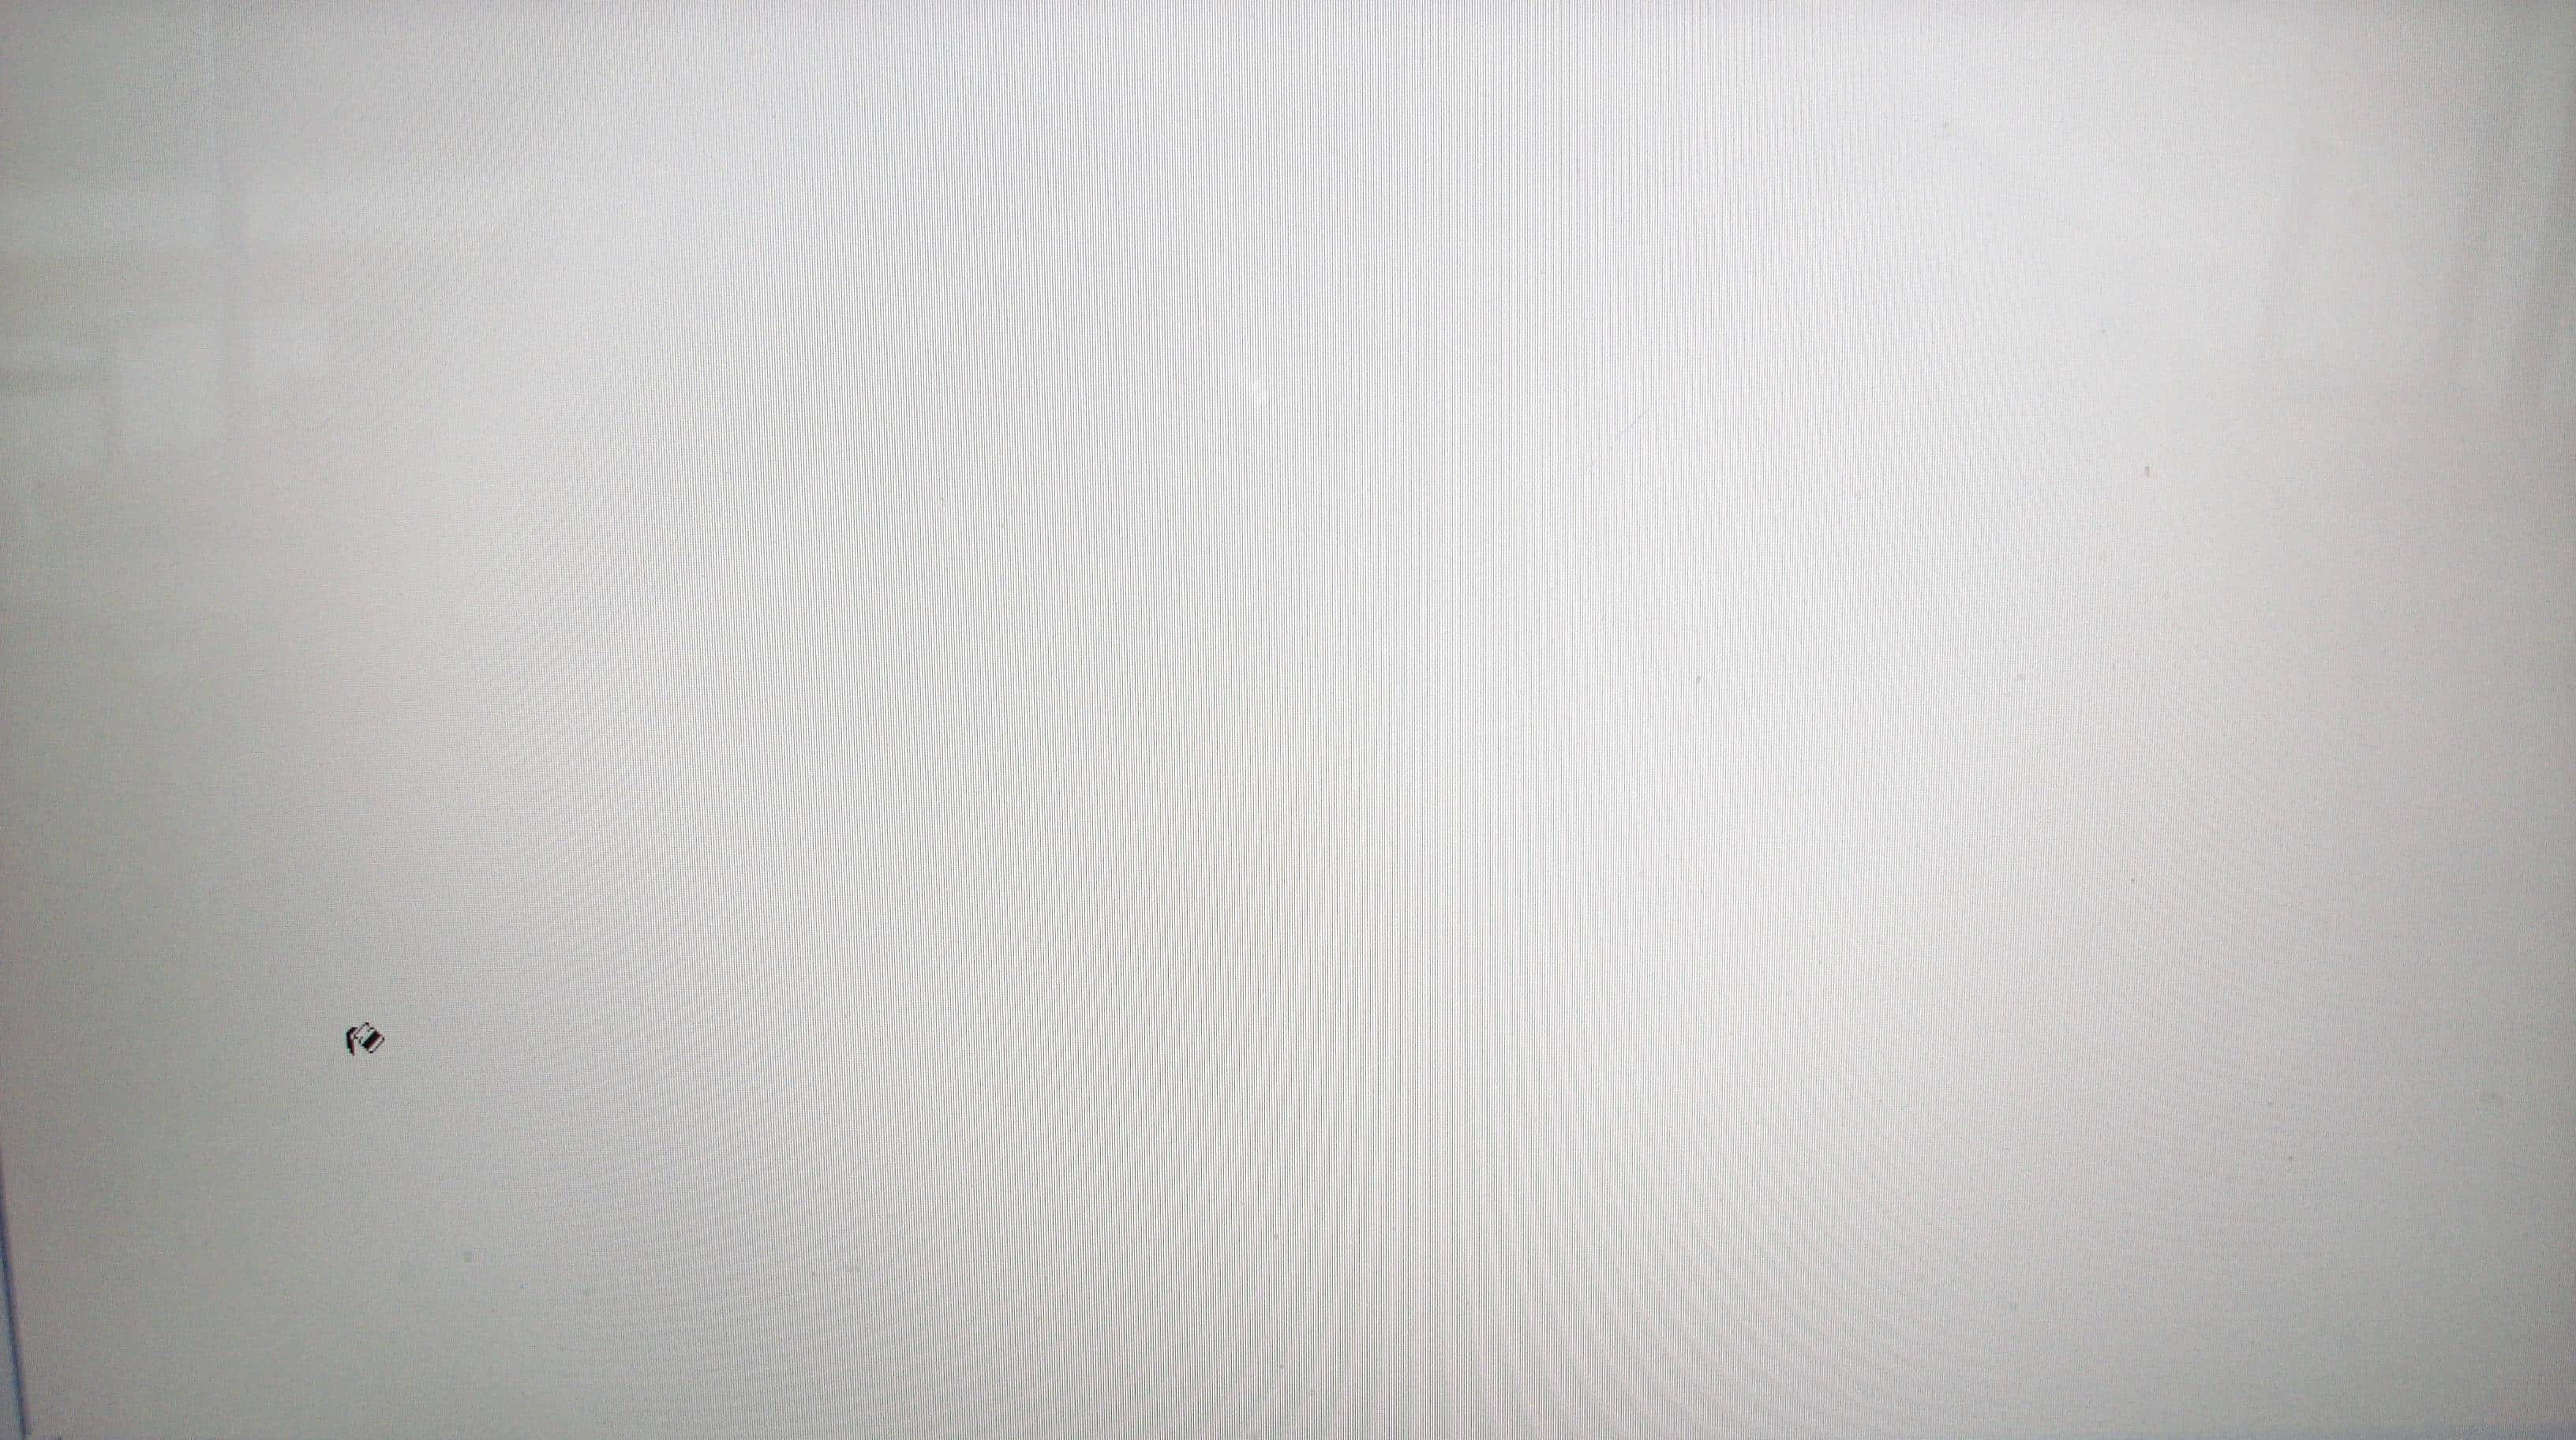 A White Laptop Screen